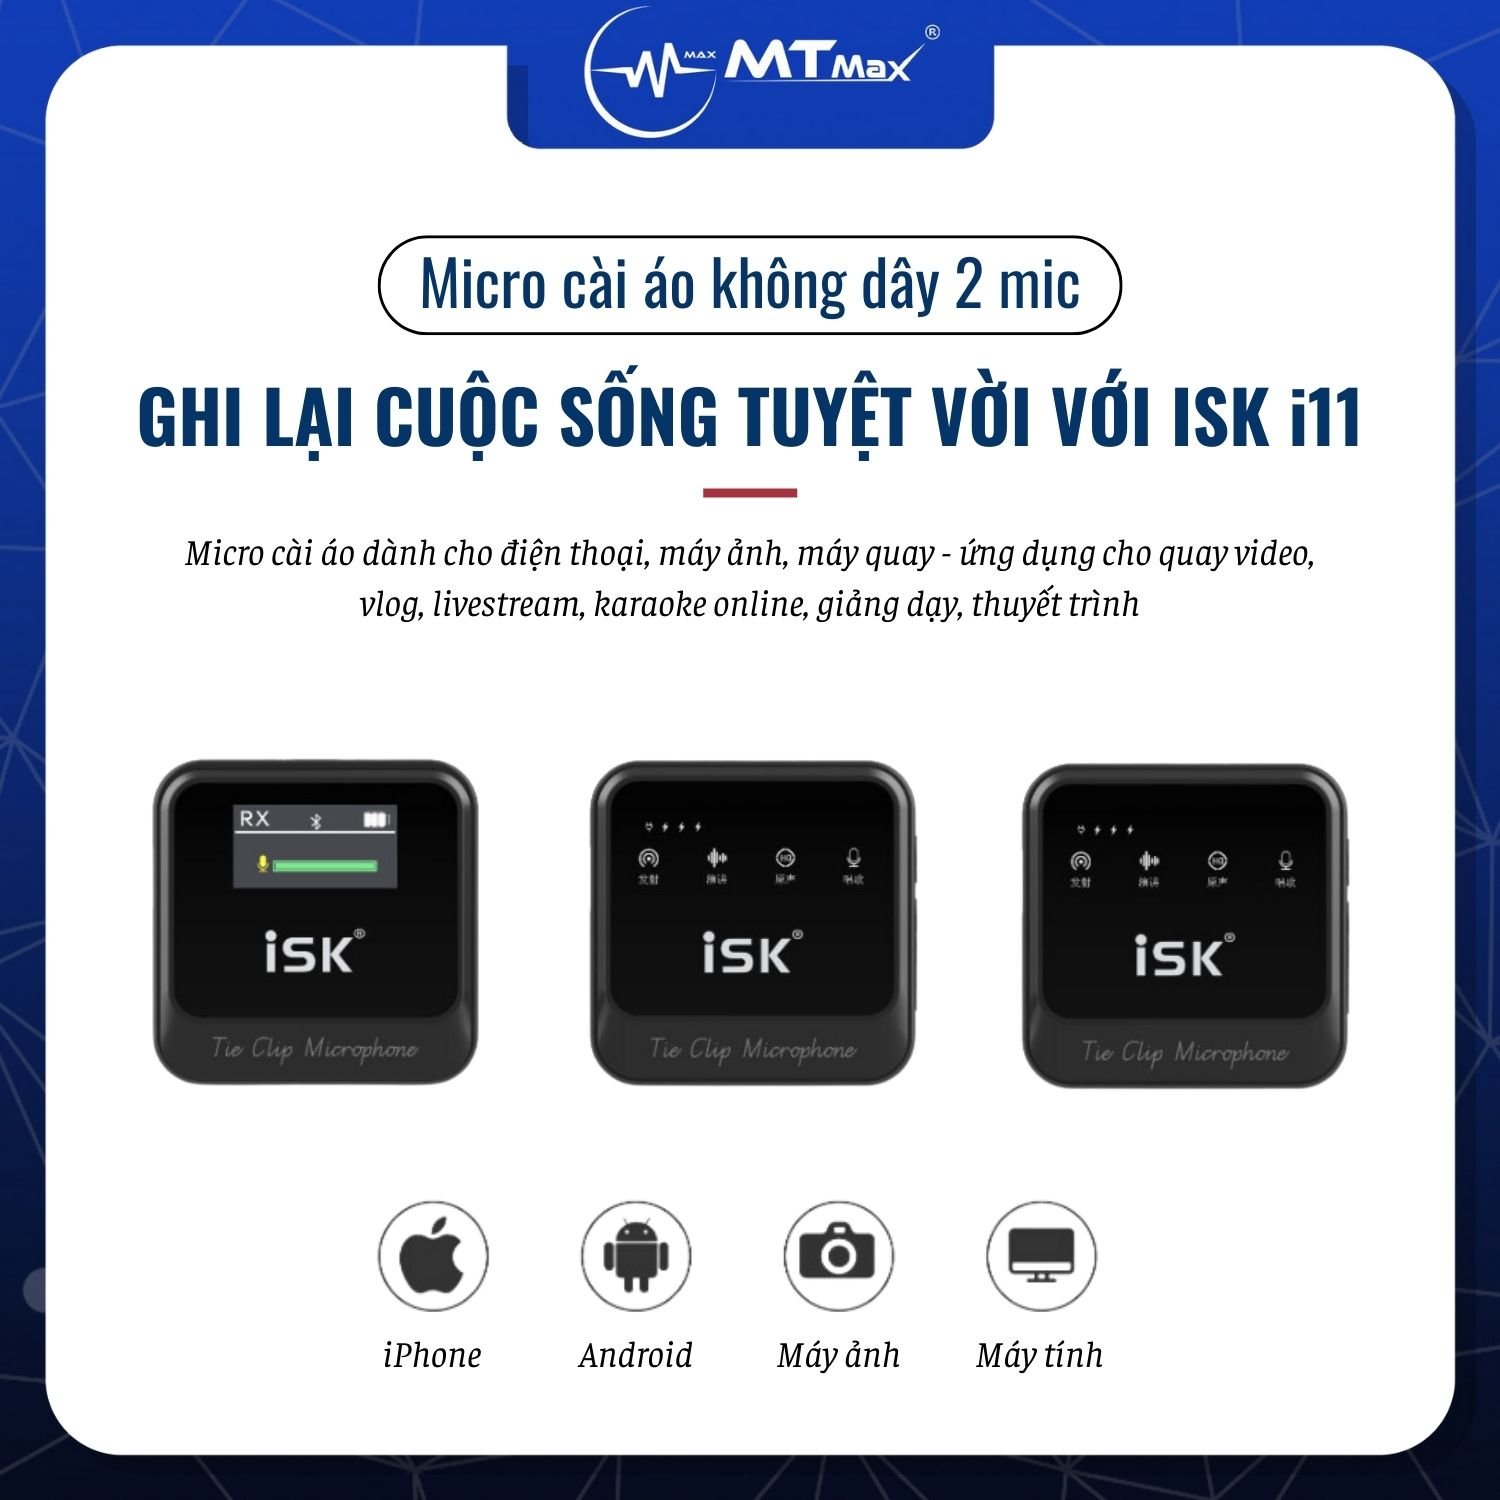 Micro Cài Áo ISK iM11 (Loại 2 Mic 1 Đầu Thu) - Micro Dành Cho Điện Thoại, Máy Ảnh, Máy Quay Hàng Chính Hãng